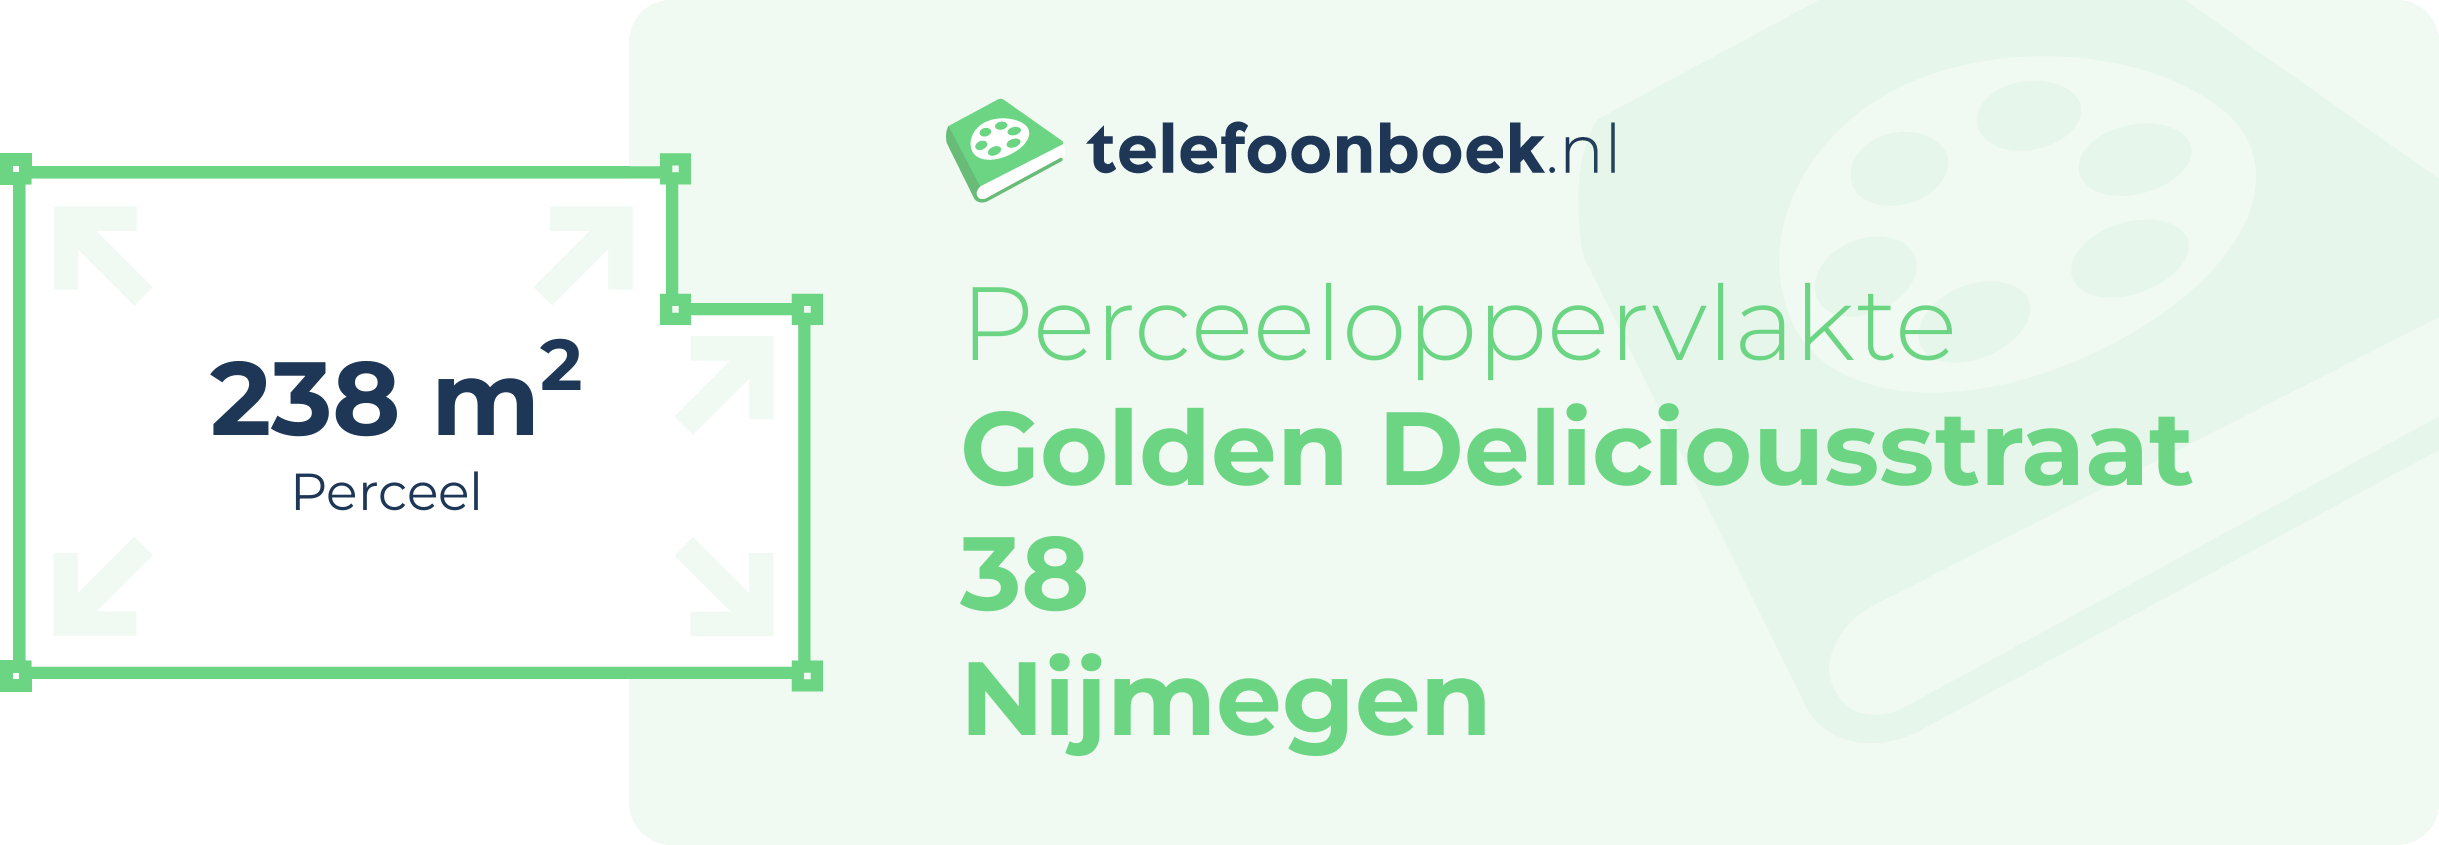 Perceeloppervlakte Golden Deliciousstraat 38 Nijmegen